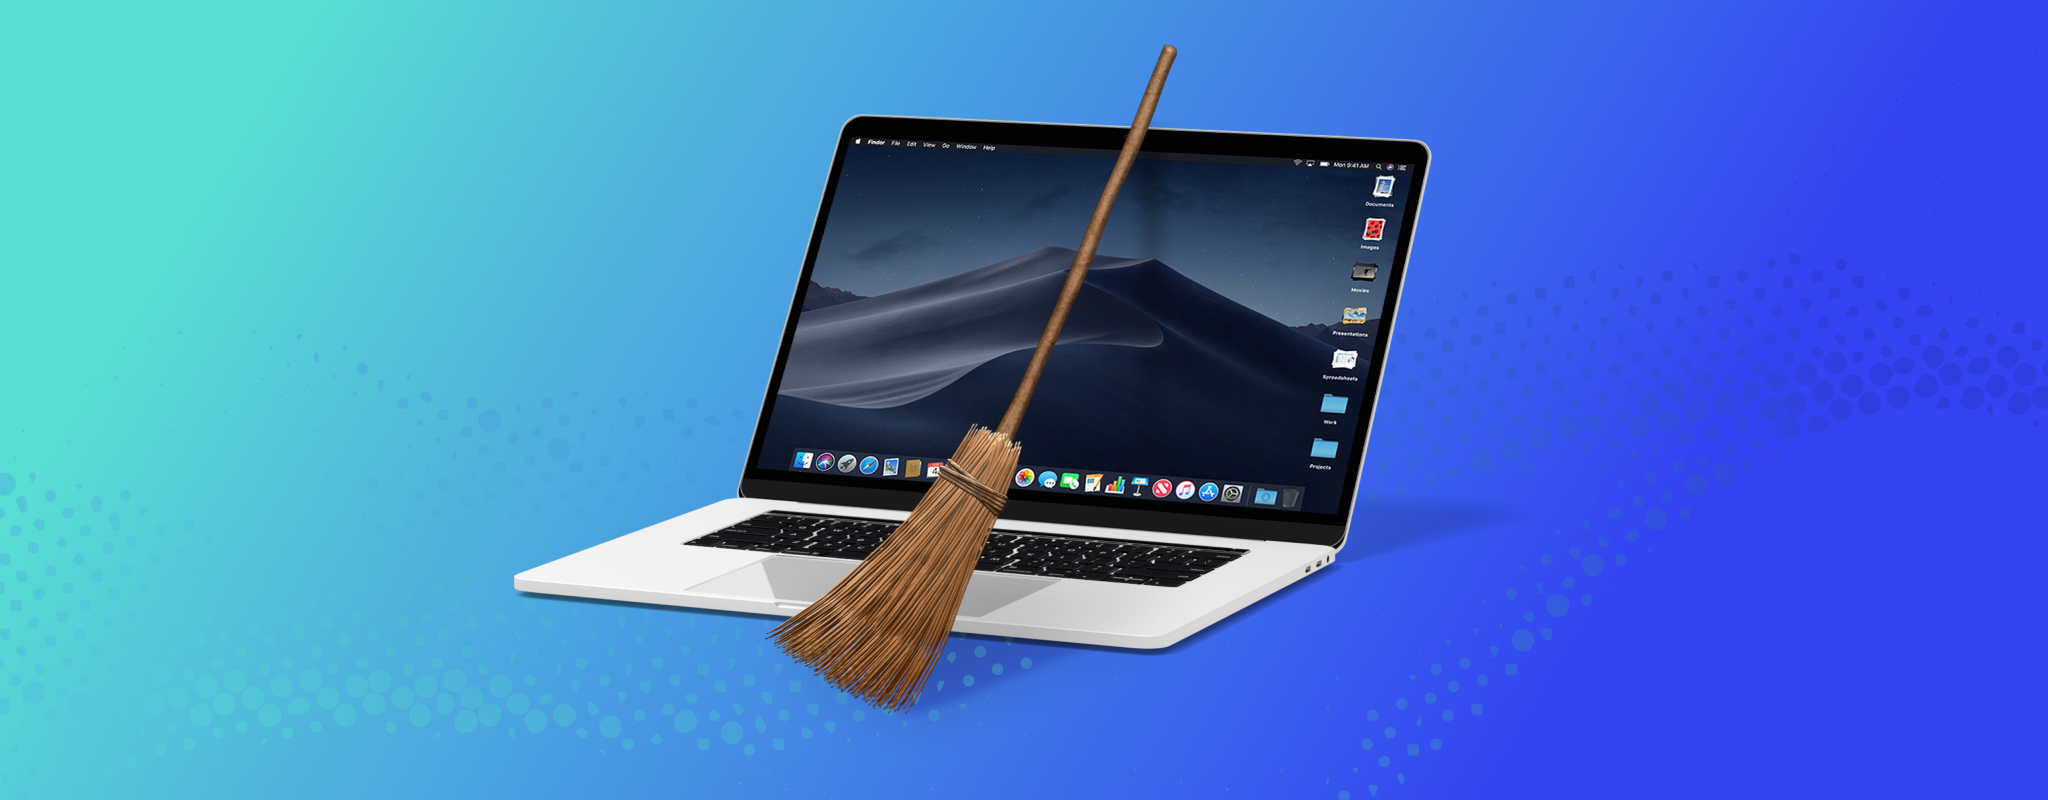 macbook pro mac adware cleaner